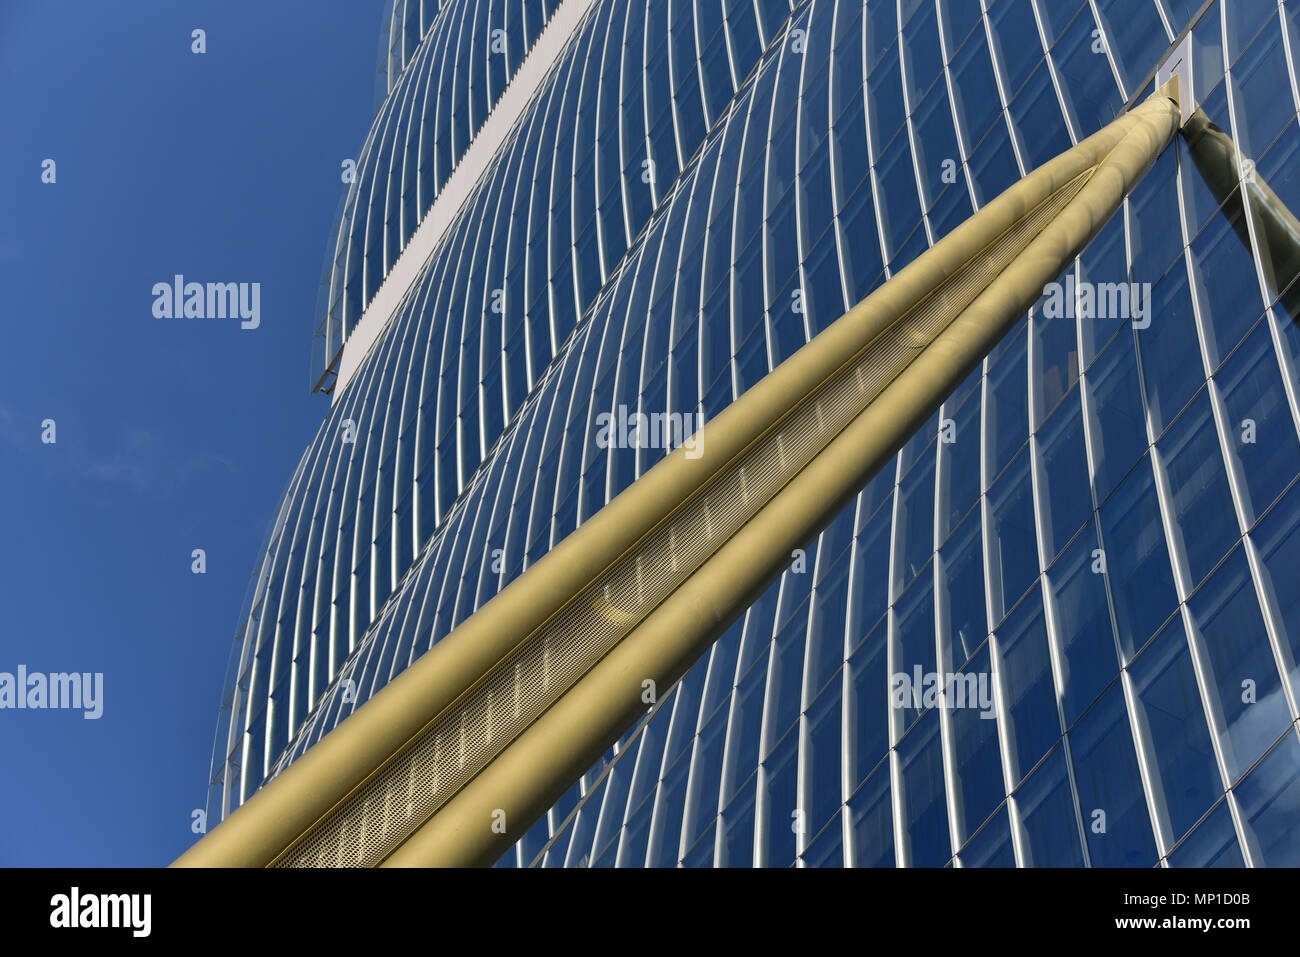 Detalle, Il Dritto Allianz (torre), parte de CityLife compleja, por Arata Isozaki y Andrea Maffei, Milan, Italia. Foto de stock